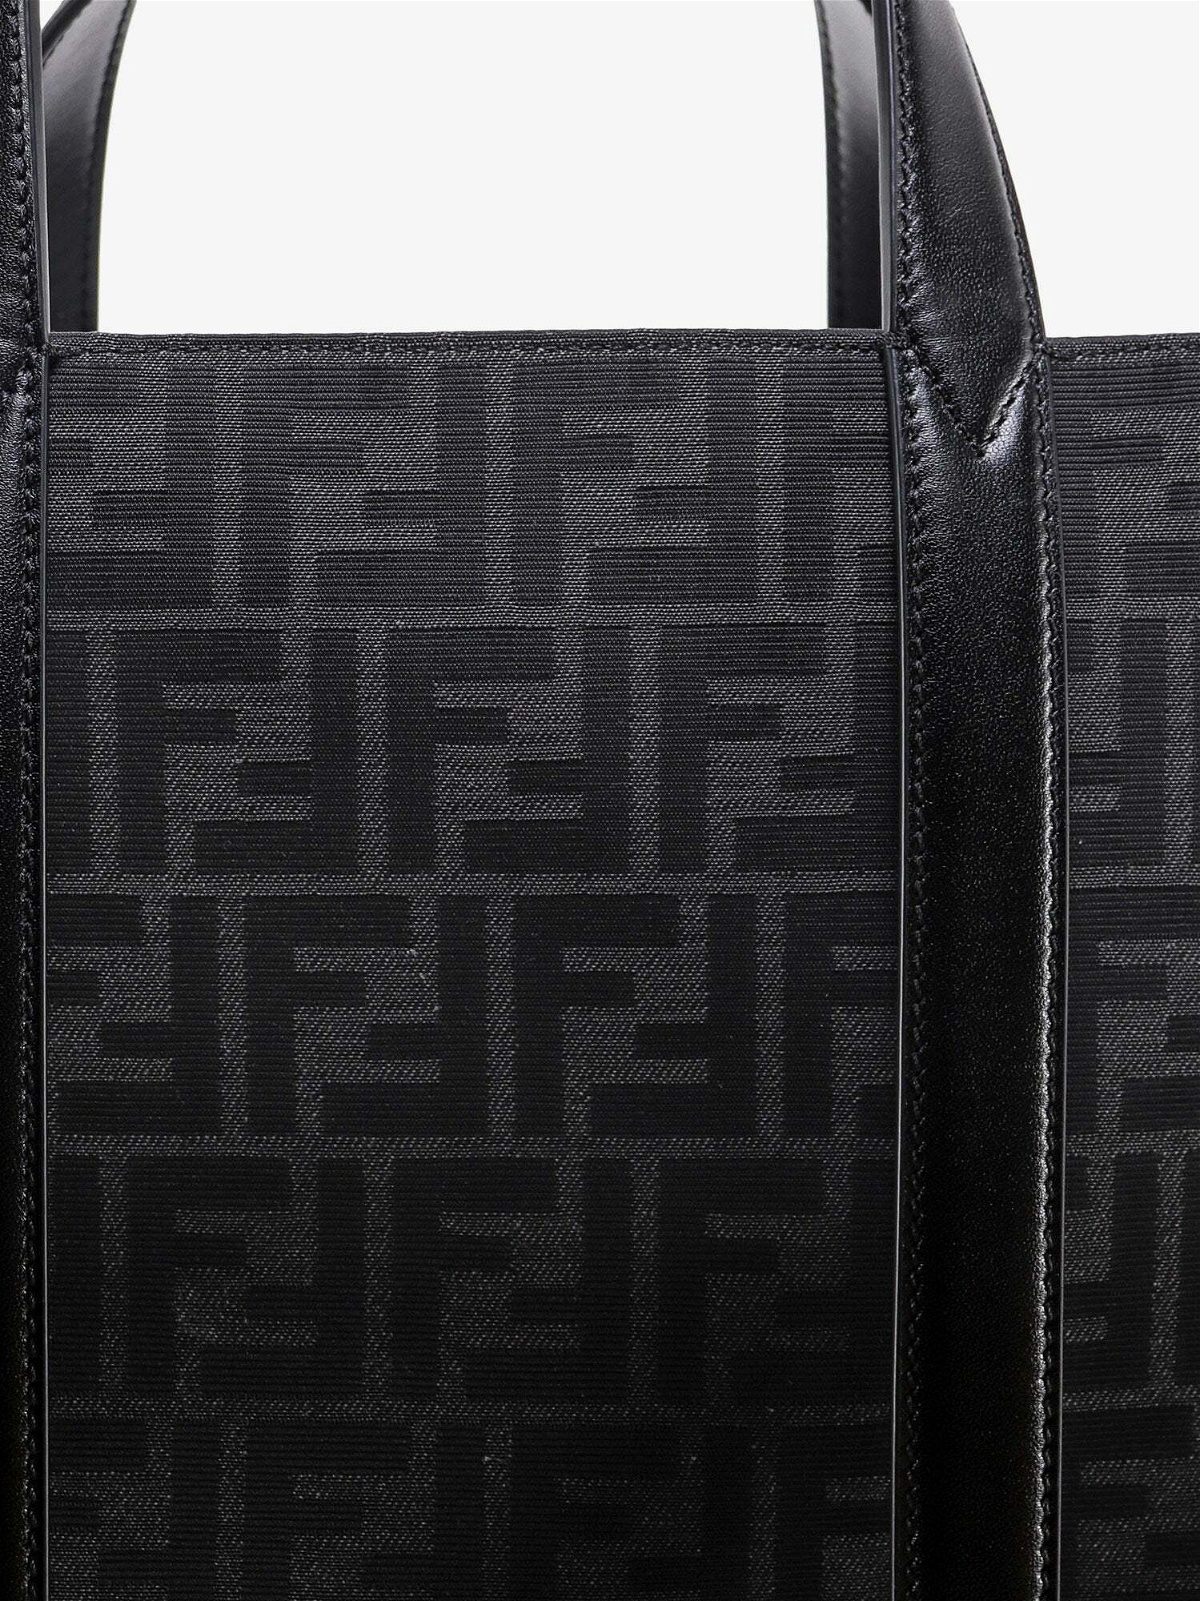 FENDI Black Tan Leather Pre Loved Shoulder Bag Purse – ReturnStyle